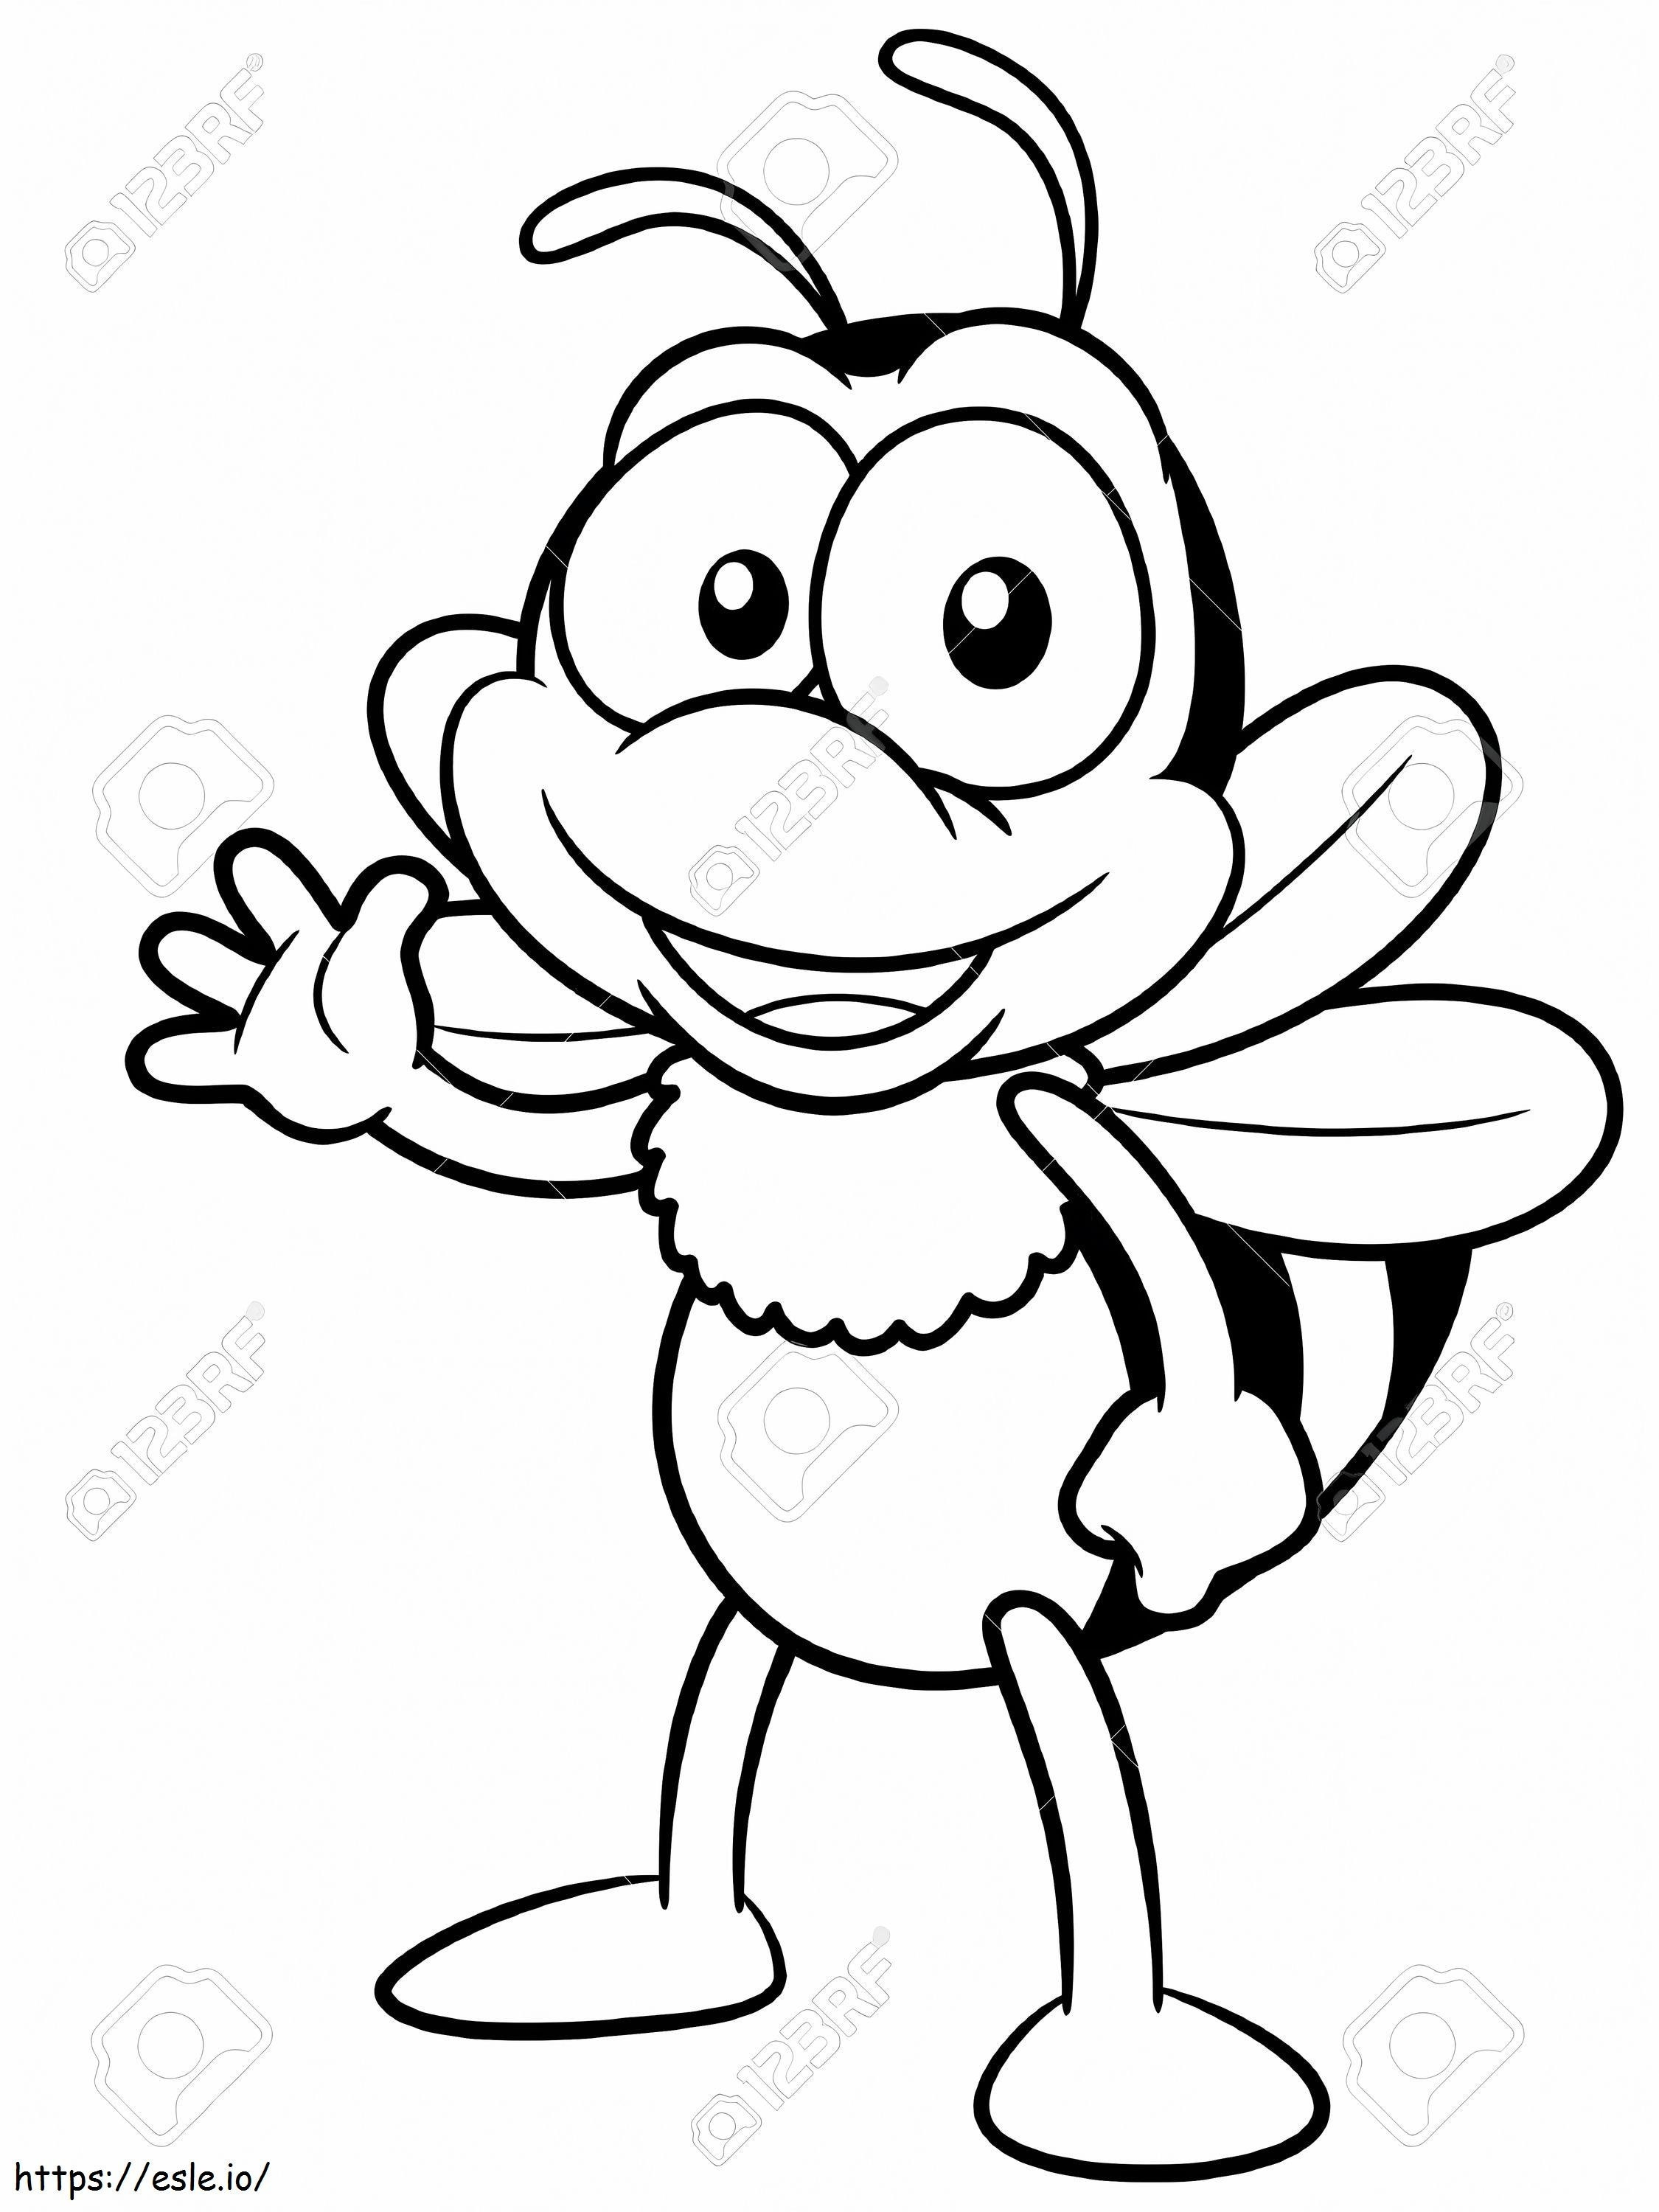 1571359405_17813670 Illustration eines Cartoon-Bienen-Malbuchs ausmalbilder